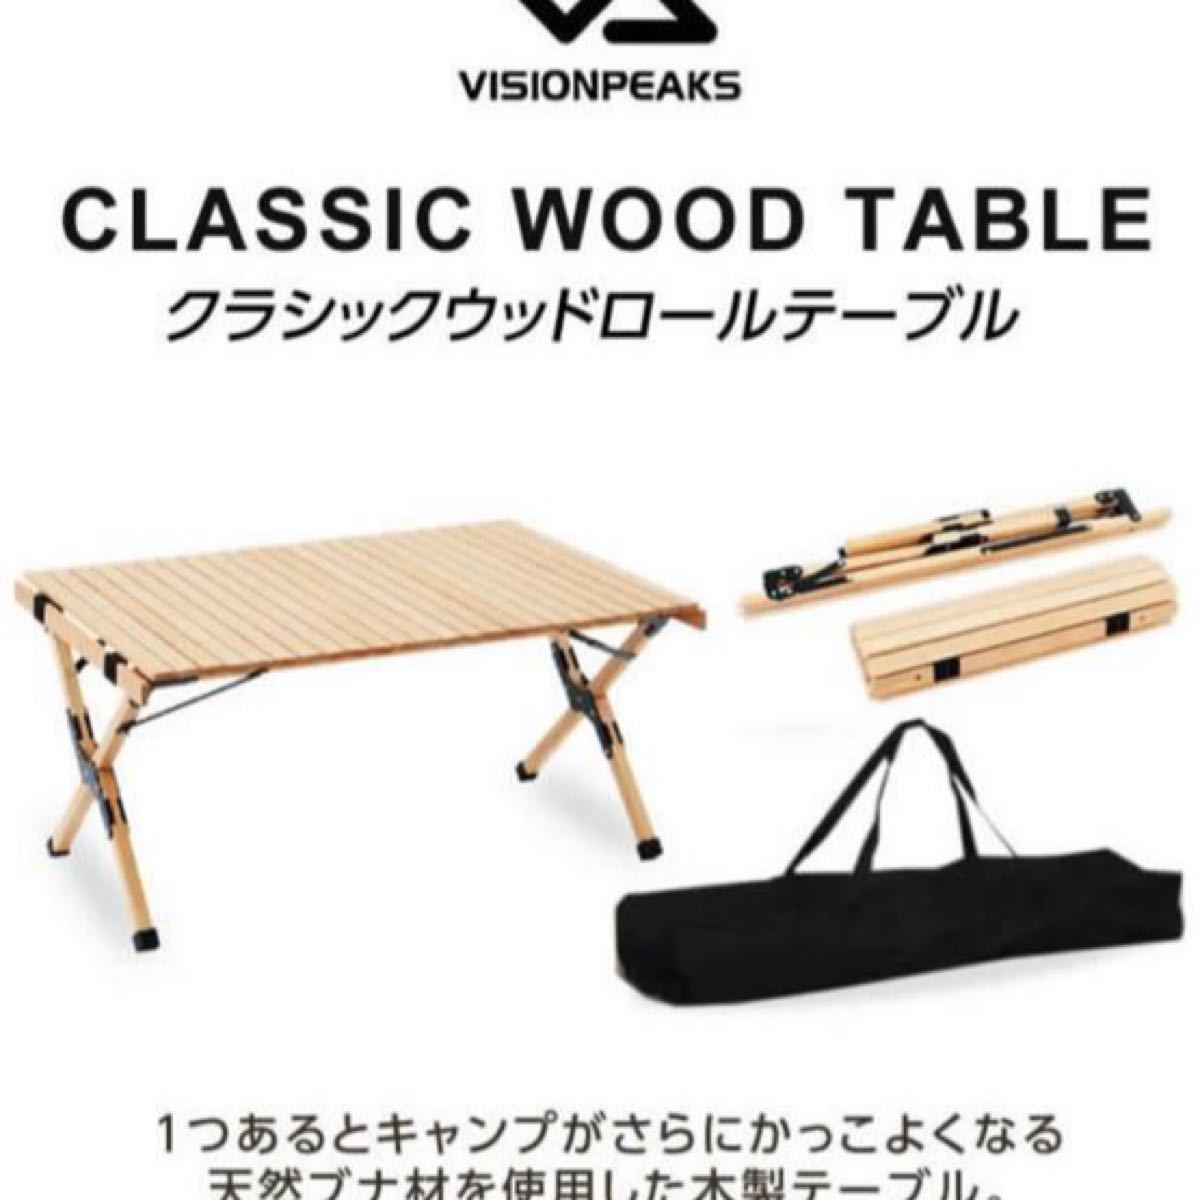 アウトドアテーブル 90cm クラシックウッドロールテーブル VP160401I07 ビジョンピークス VISIONPEAKS